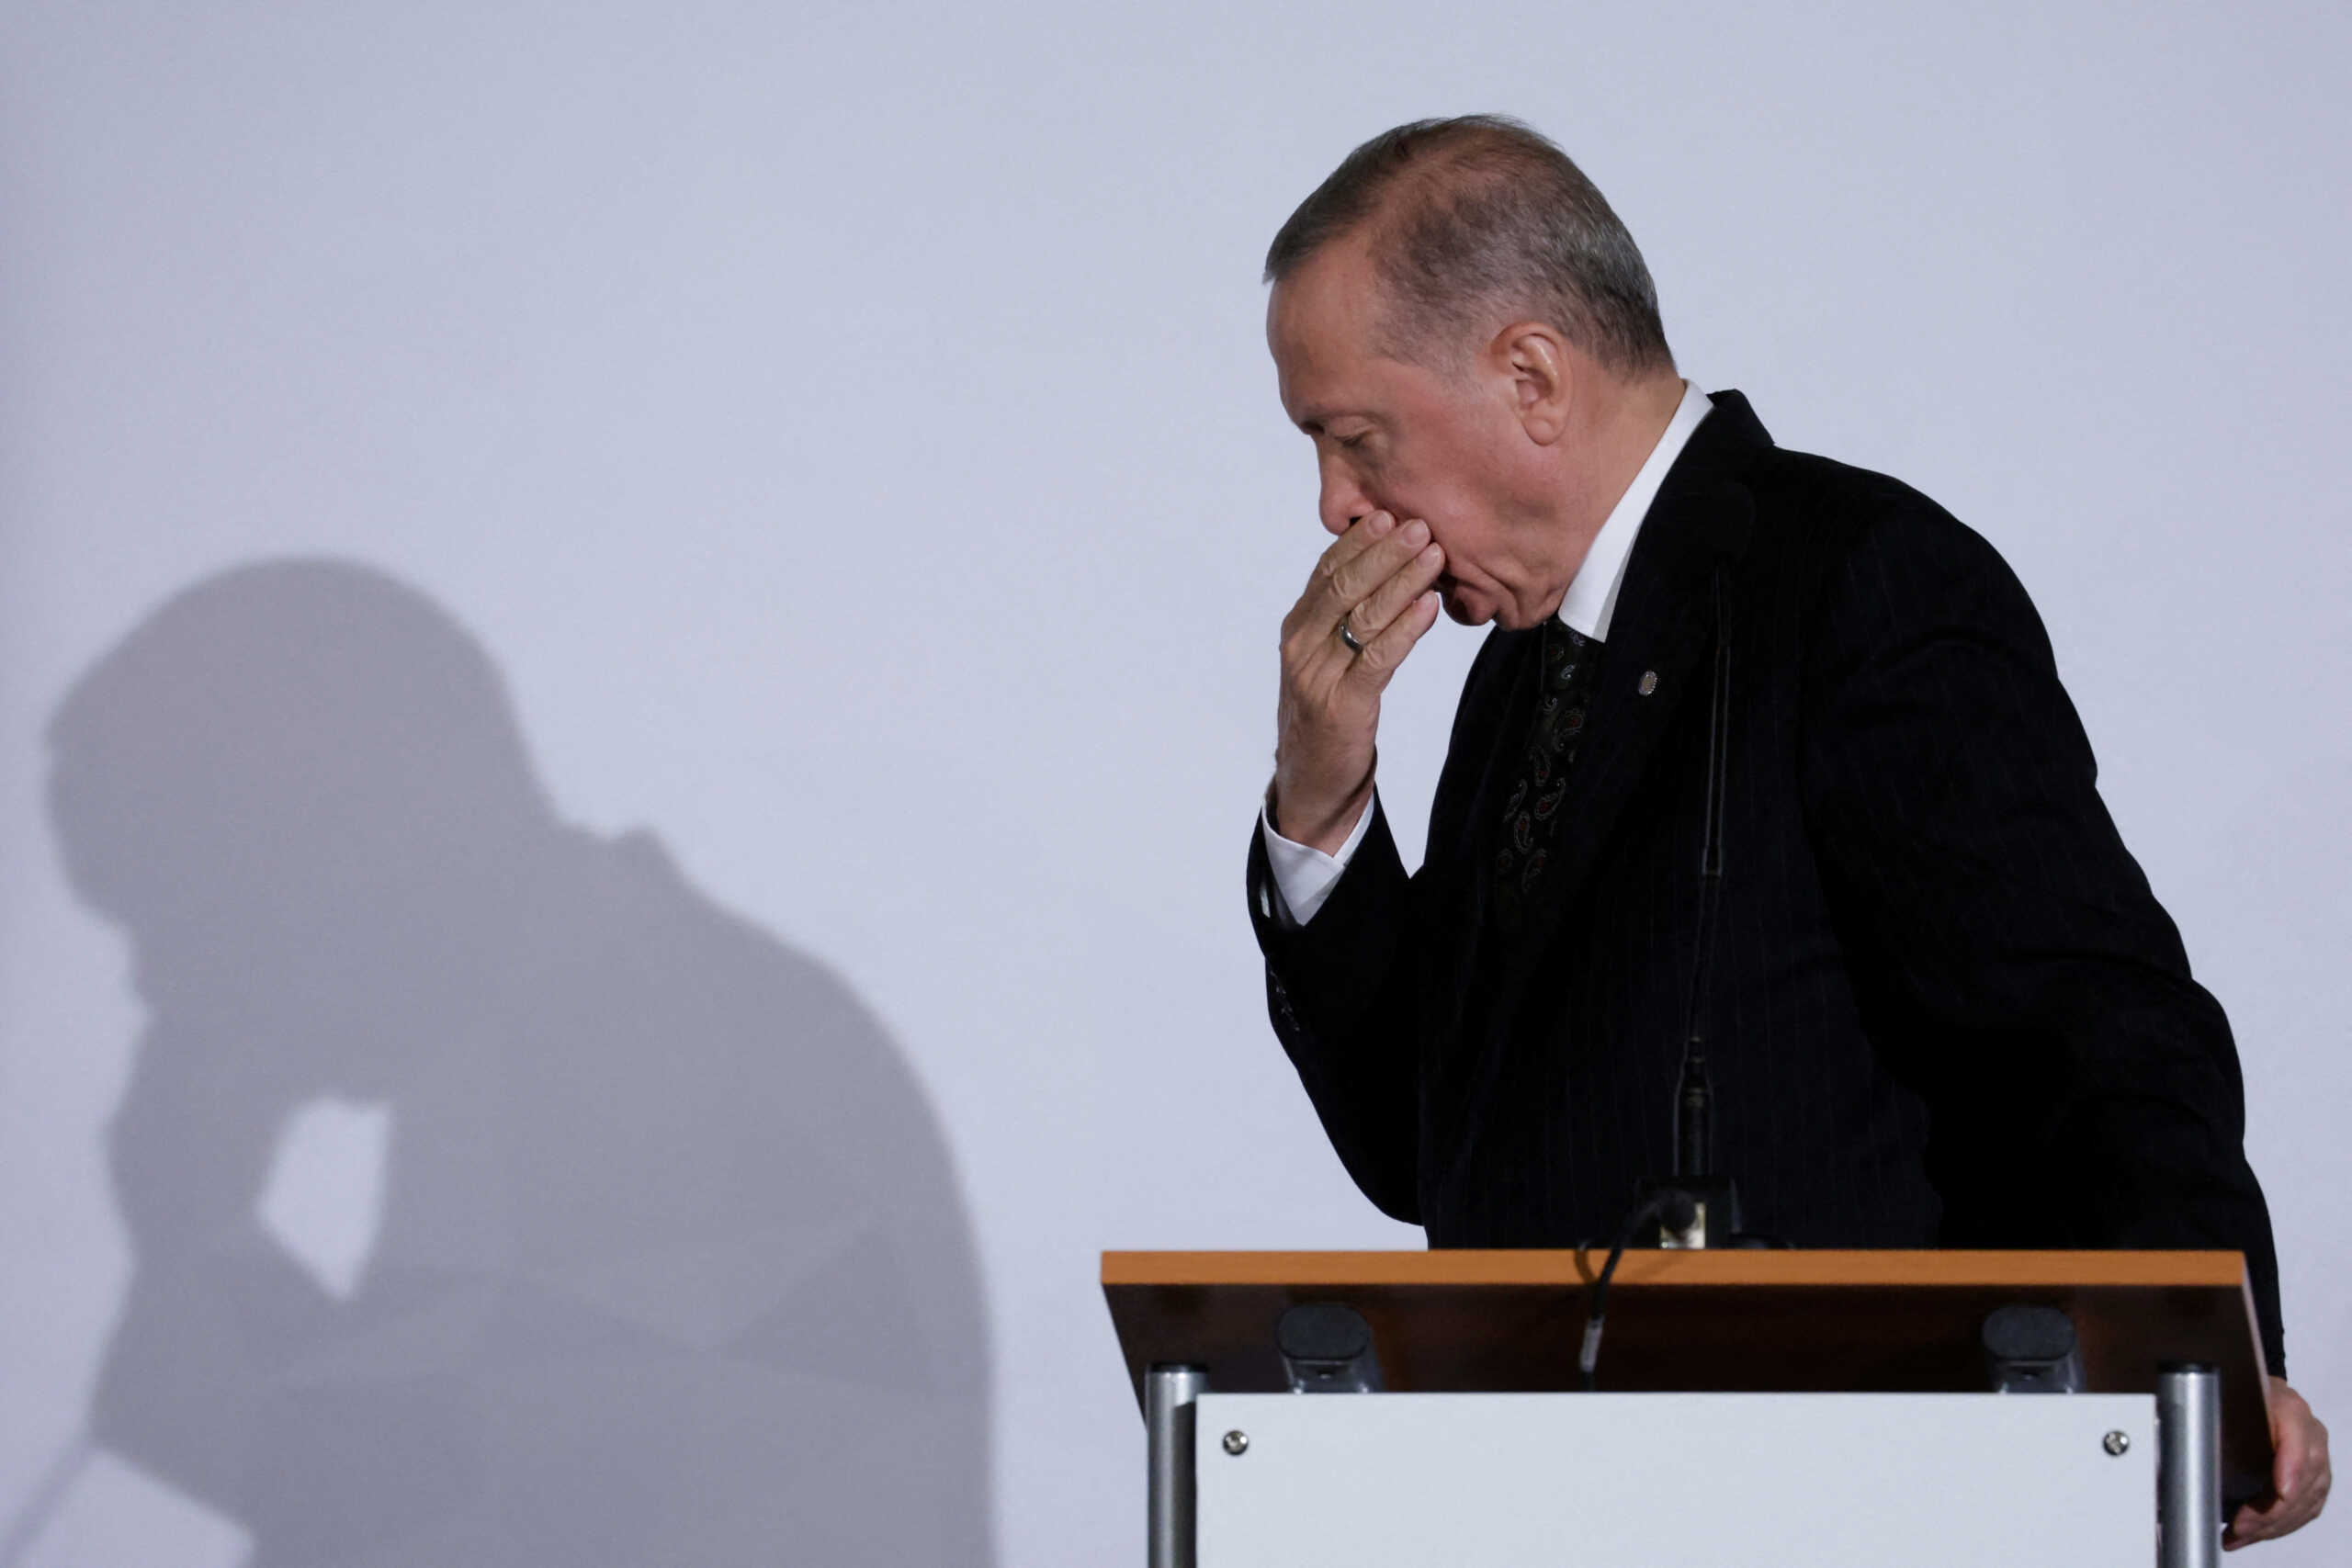 Στέιτ Ντιπάρτμεντ για δηλώσεις Ερντογάν: Όχι σε απειλές και προκλητική ρητορική